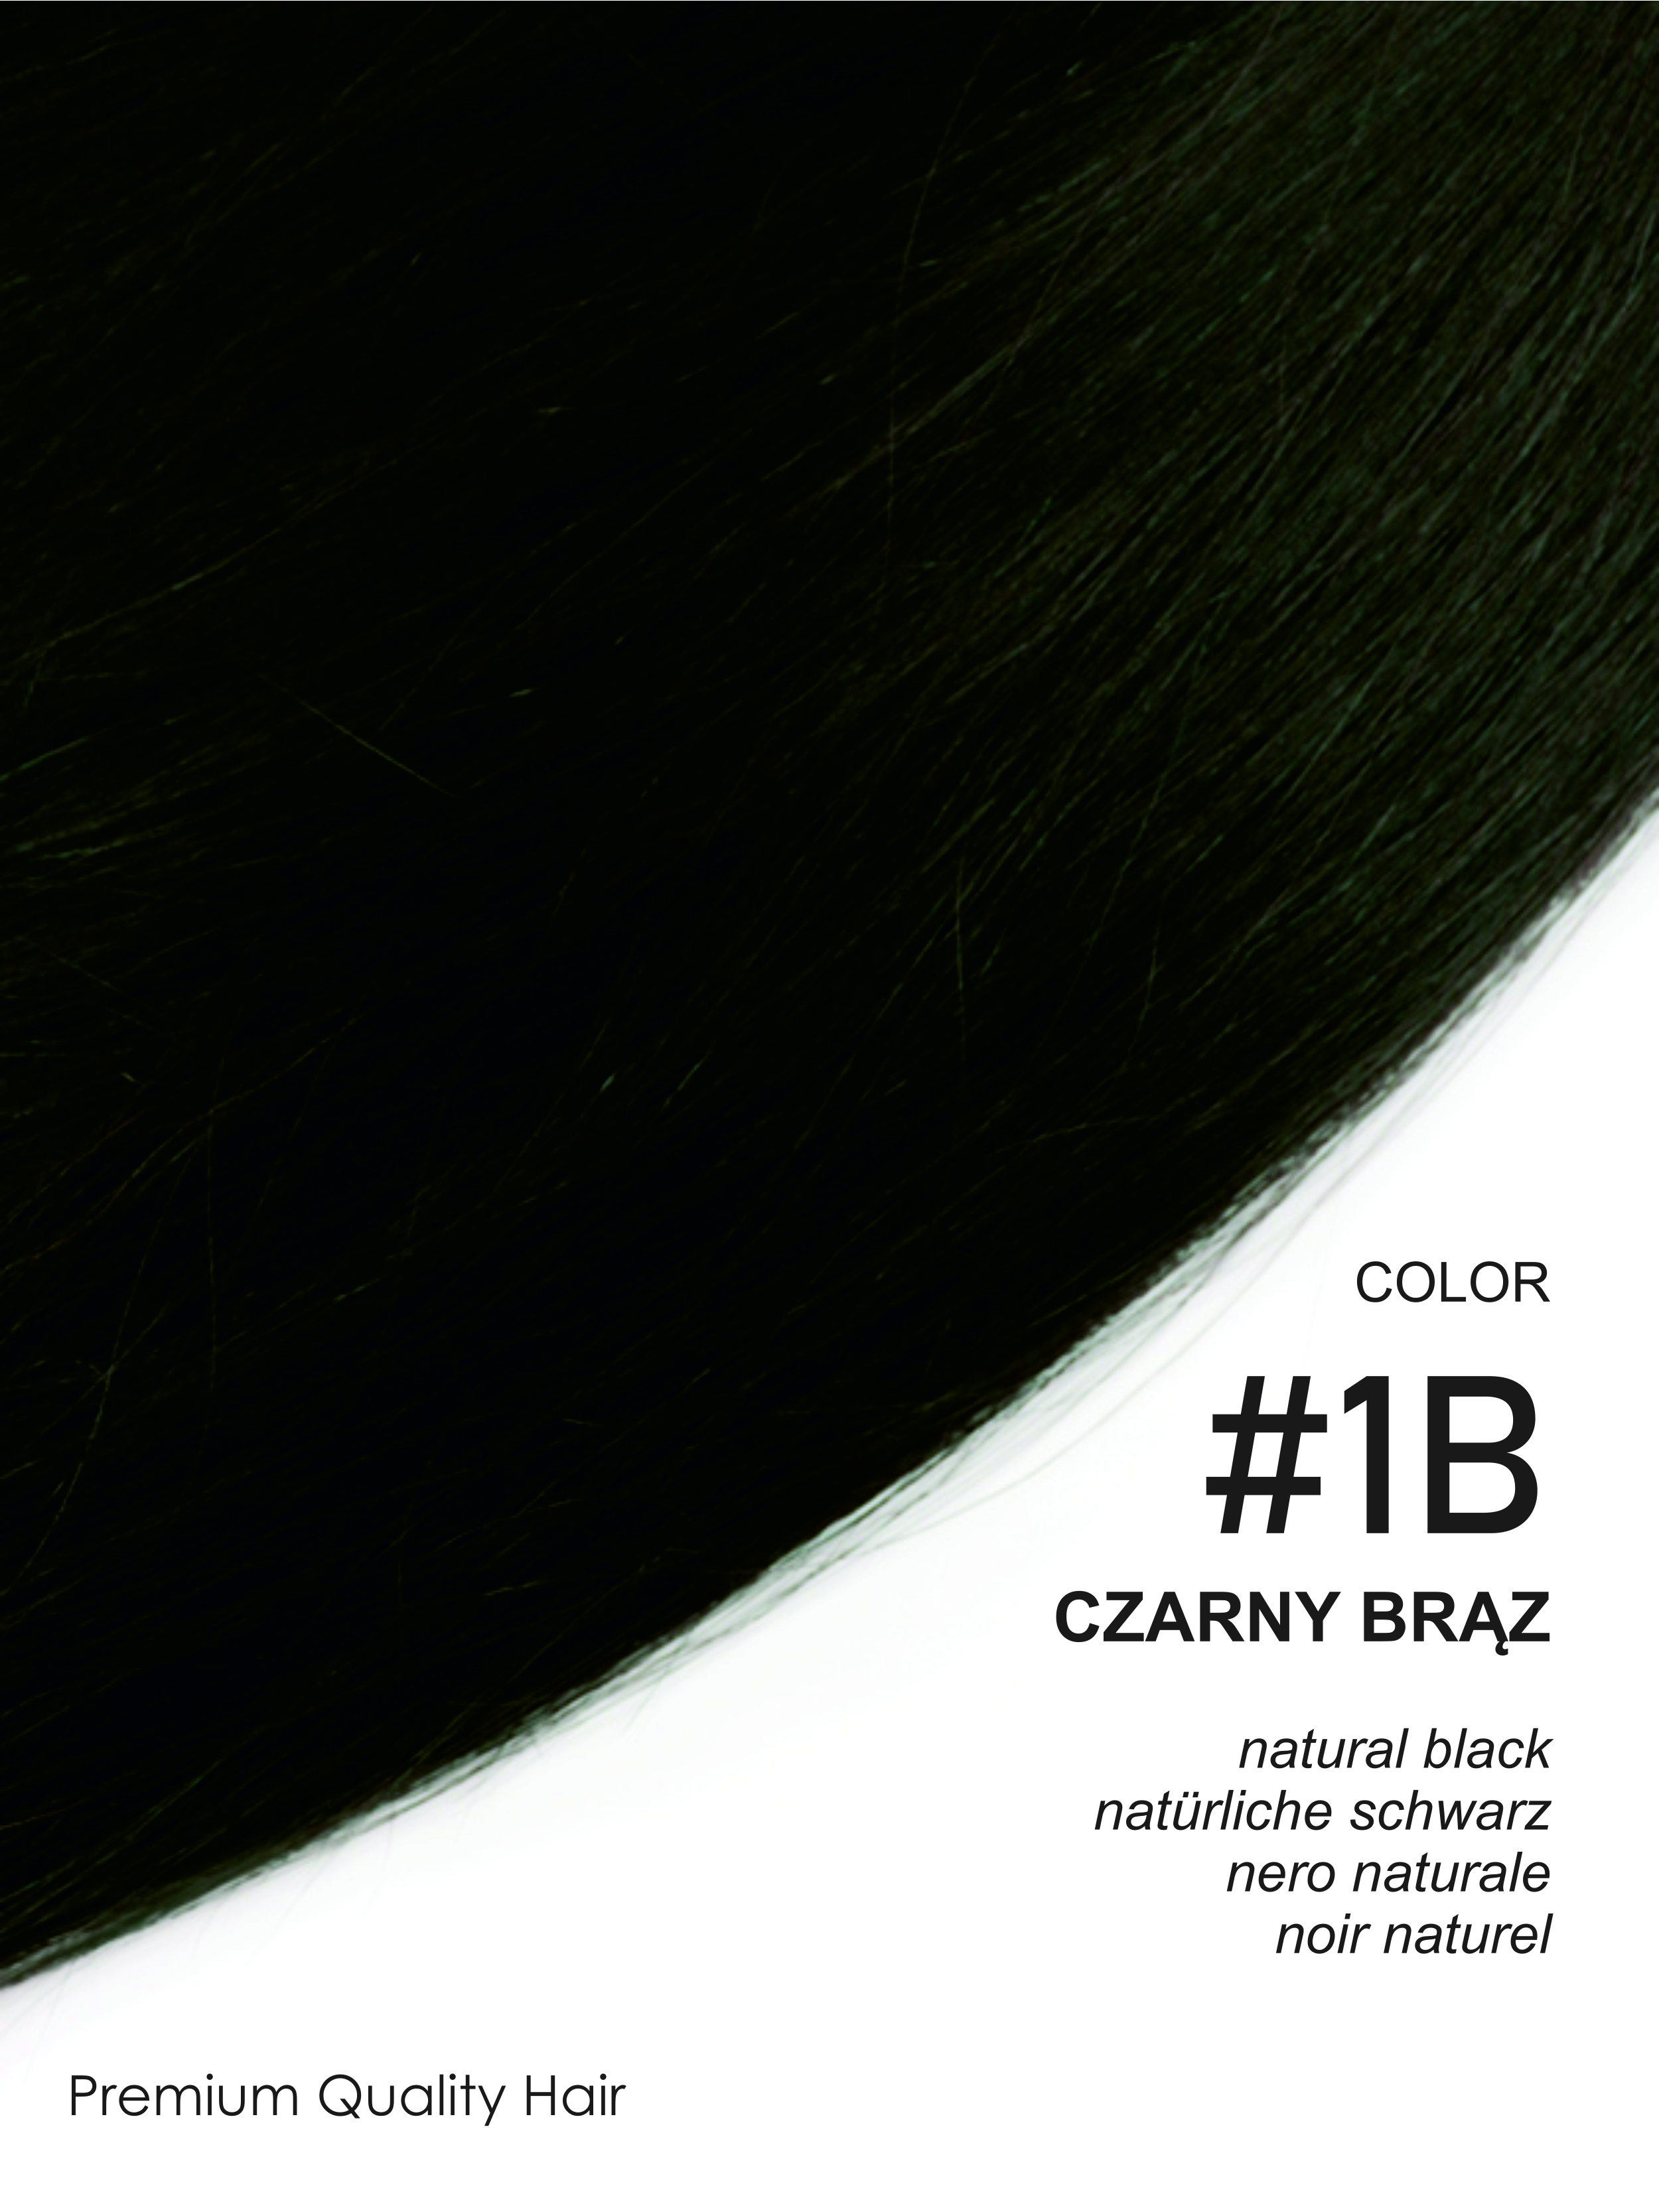 Beauty for You Slovanské vlasy - mikro pásky 2 cm, vlasy 35 cm, pre sendvičovú metódu